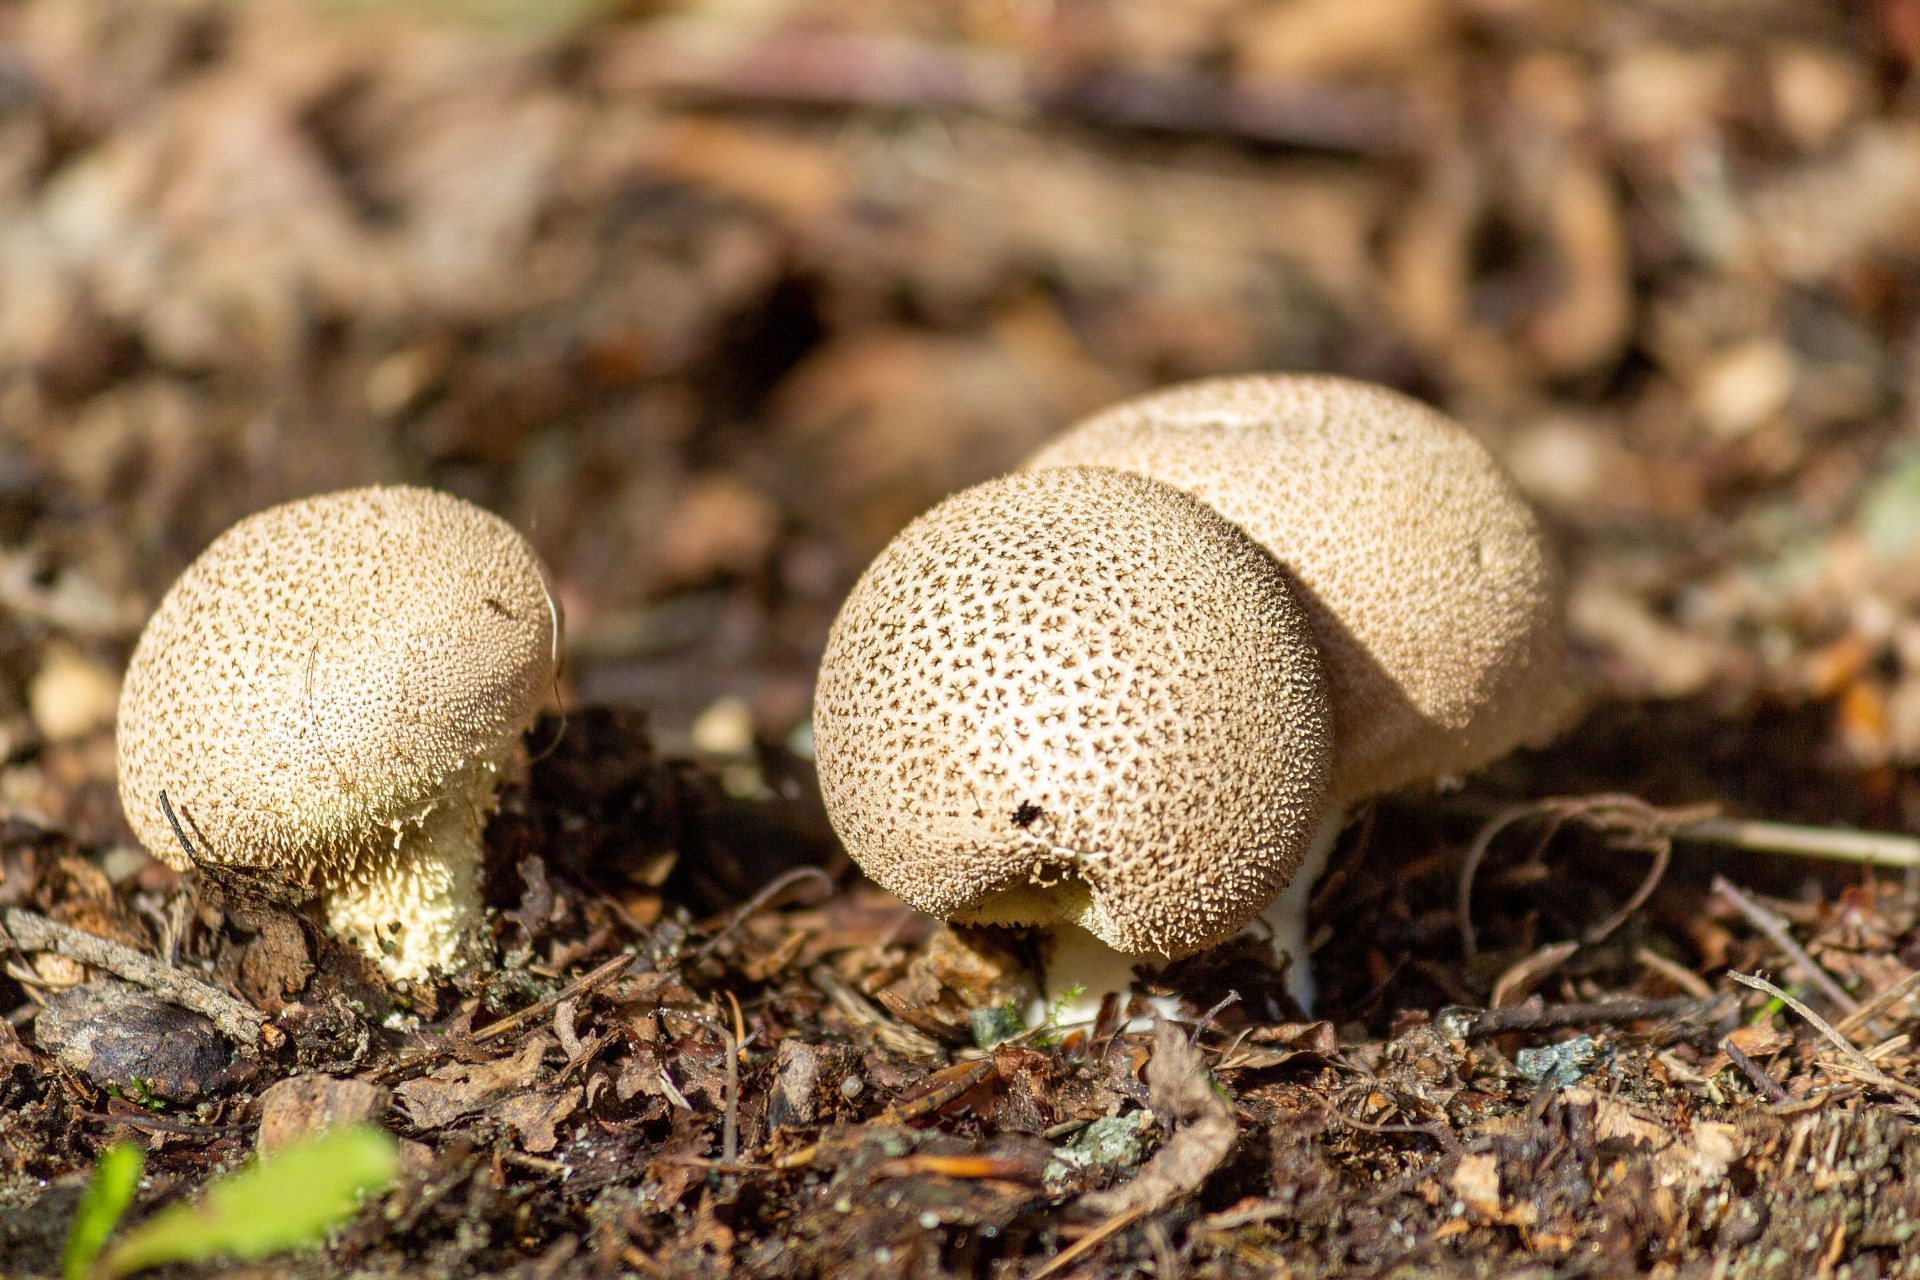 Puffball mushrooms are edible. (Image via Unsplash/ Slawek K)